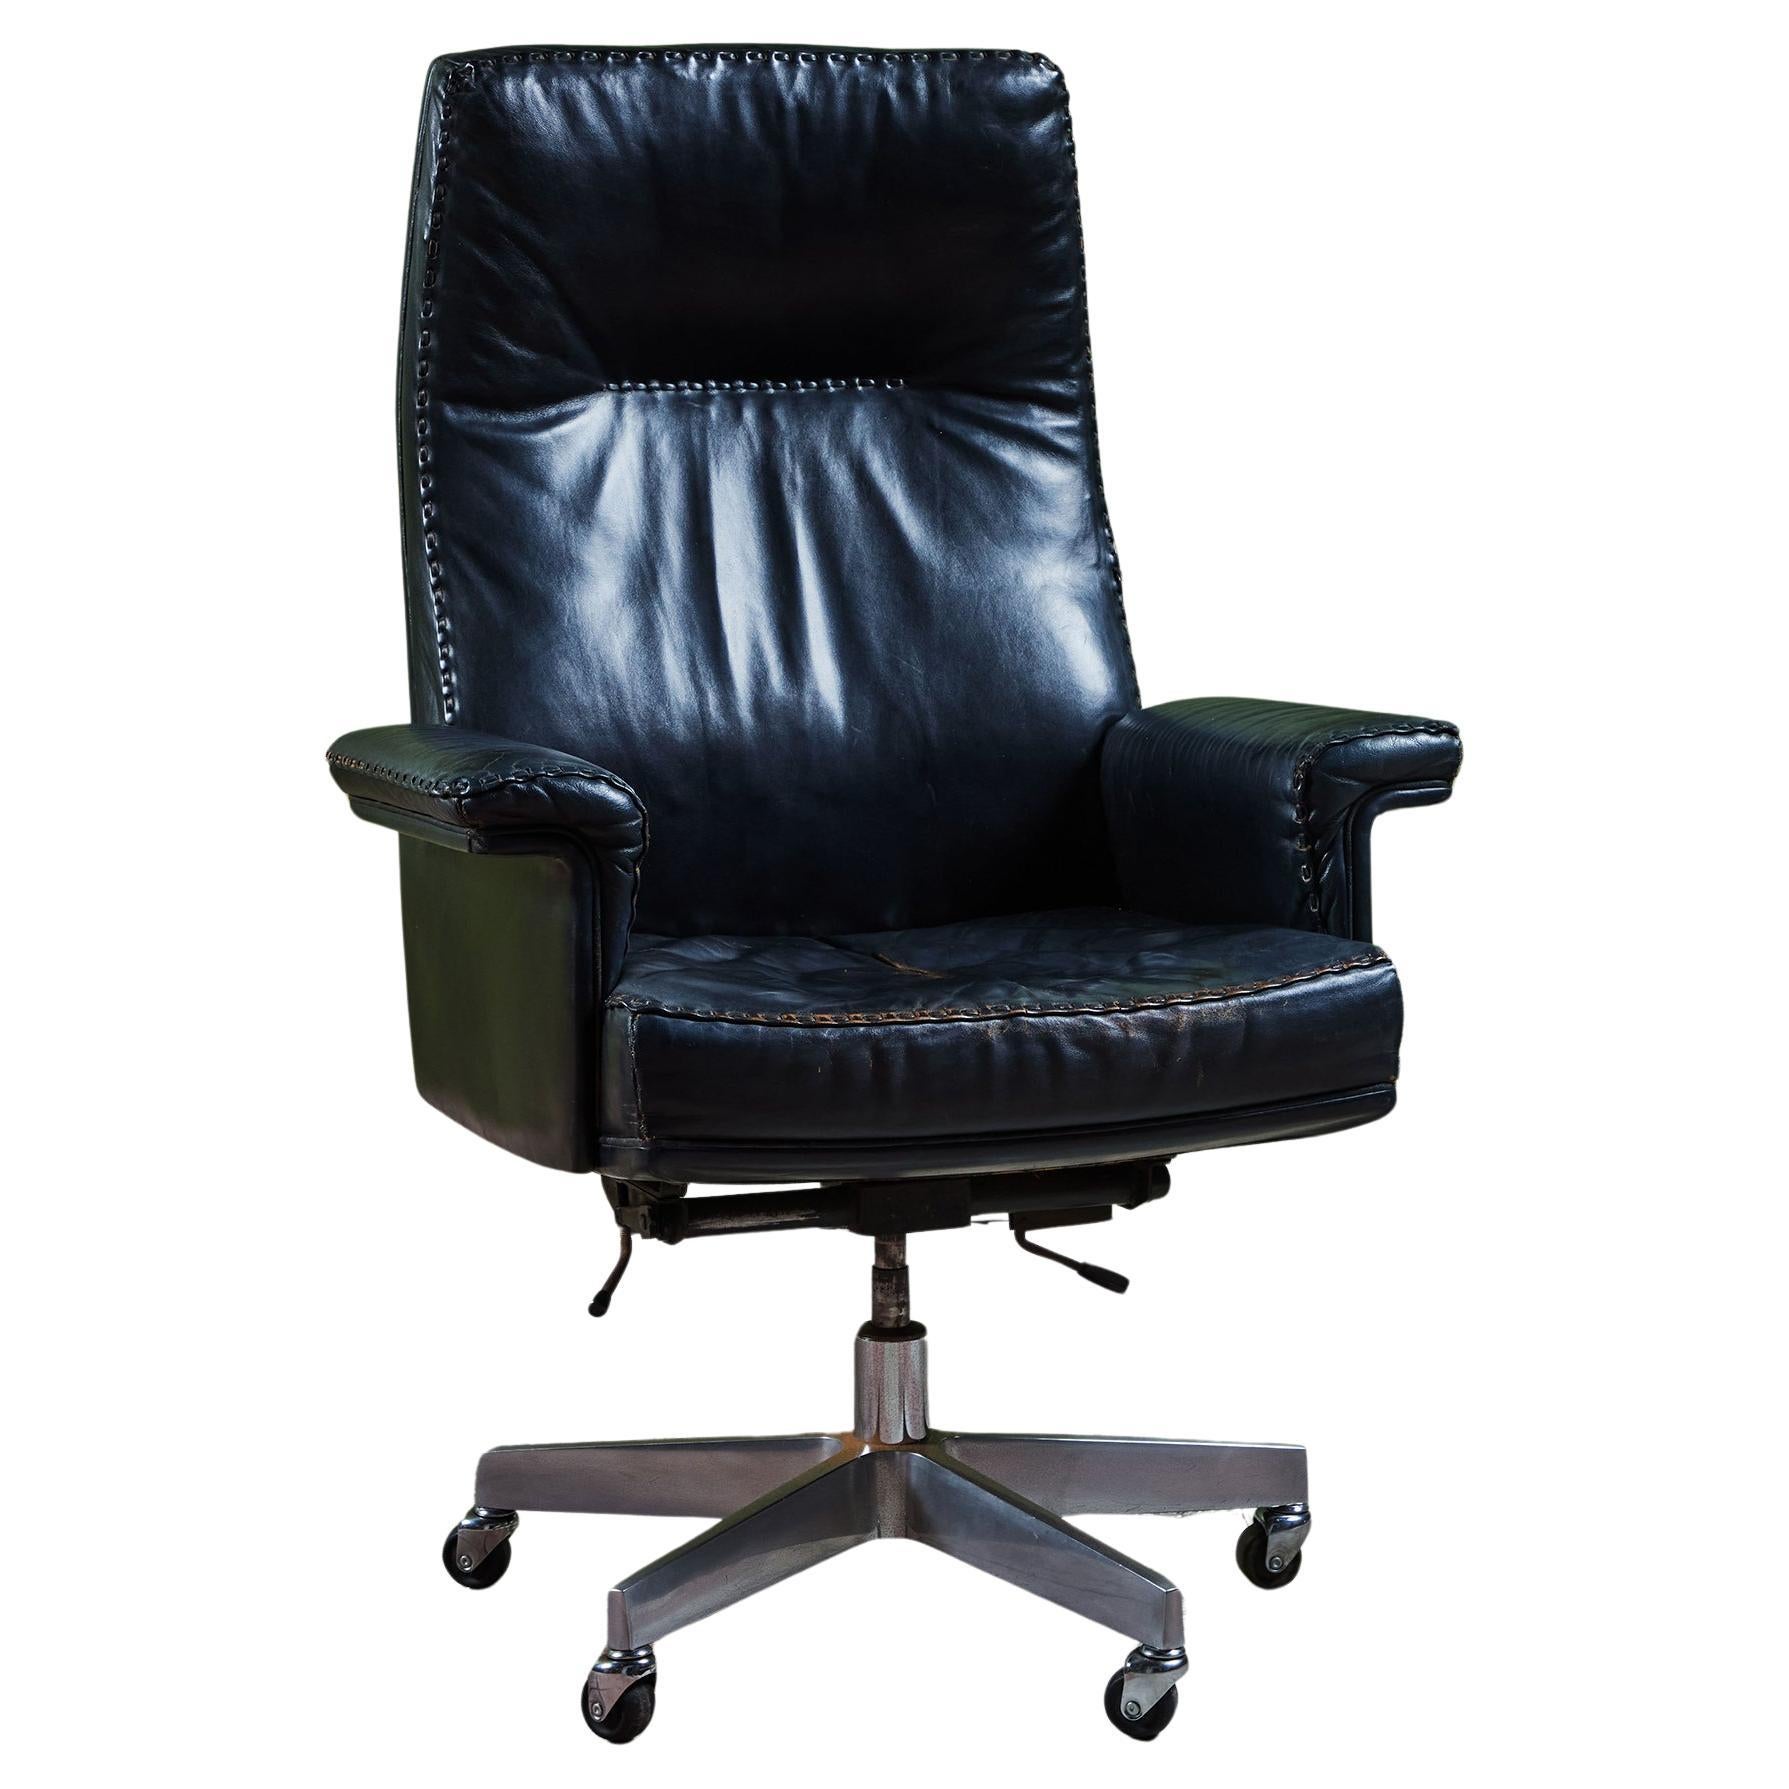 De Sede "DS-35" Executive Office Desk Chair